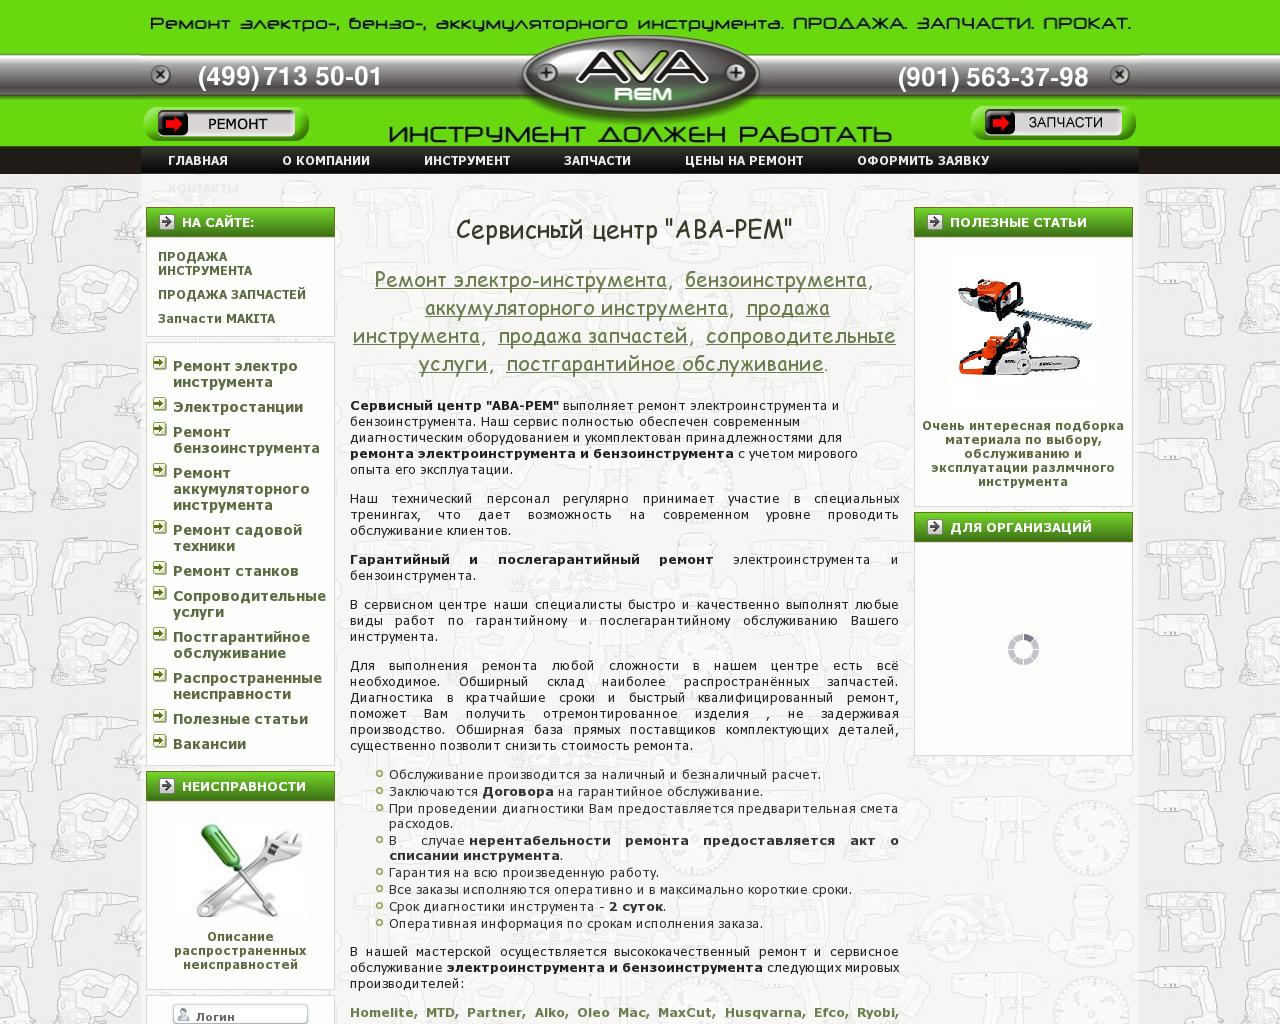 Изображение сайта ava-r.ru в разрешении 1280x1024